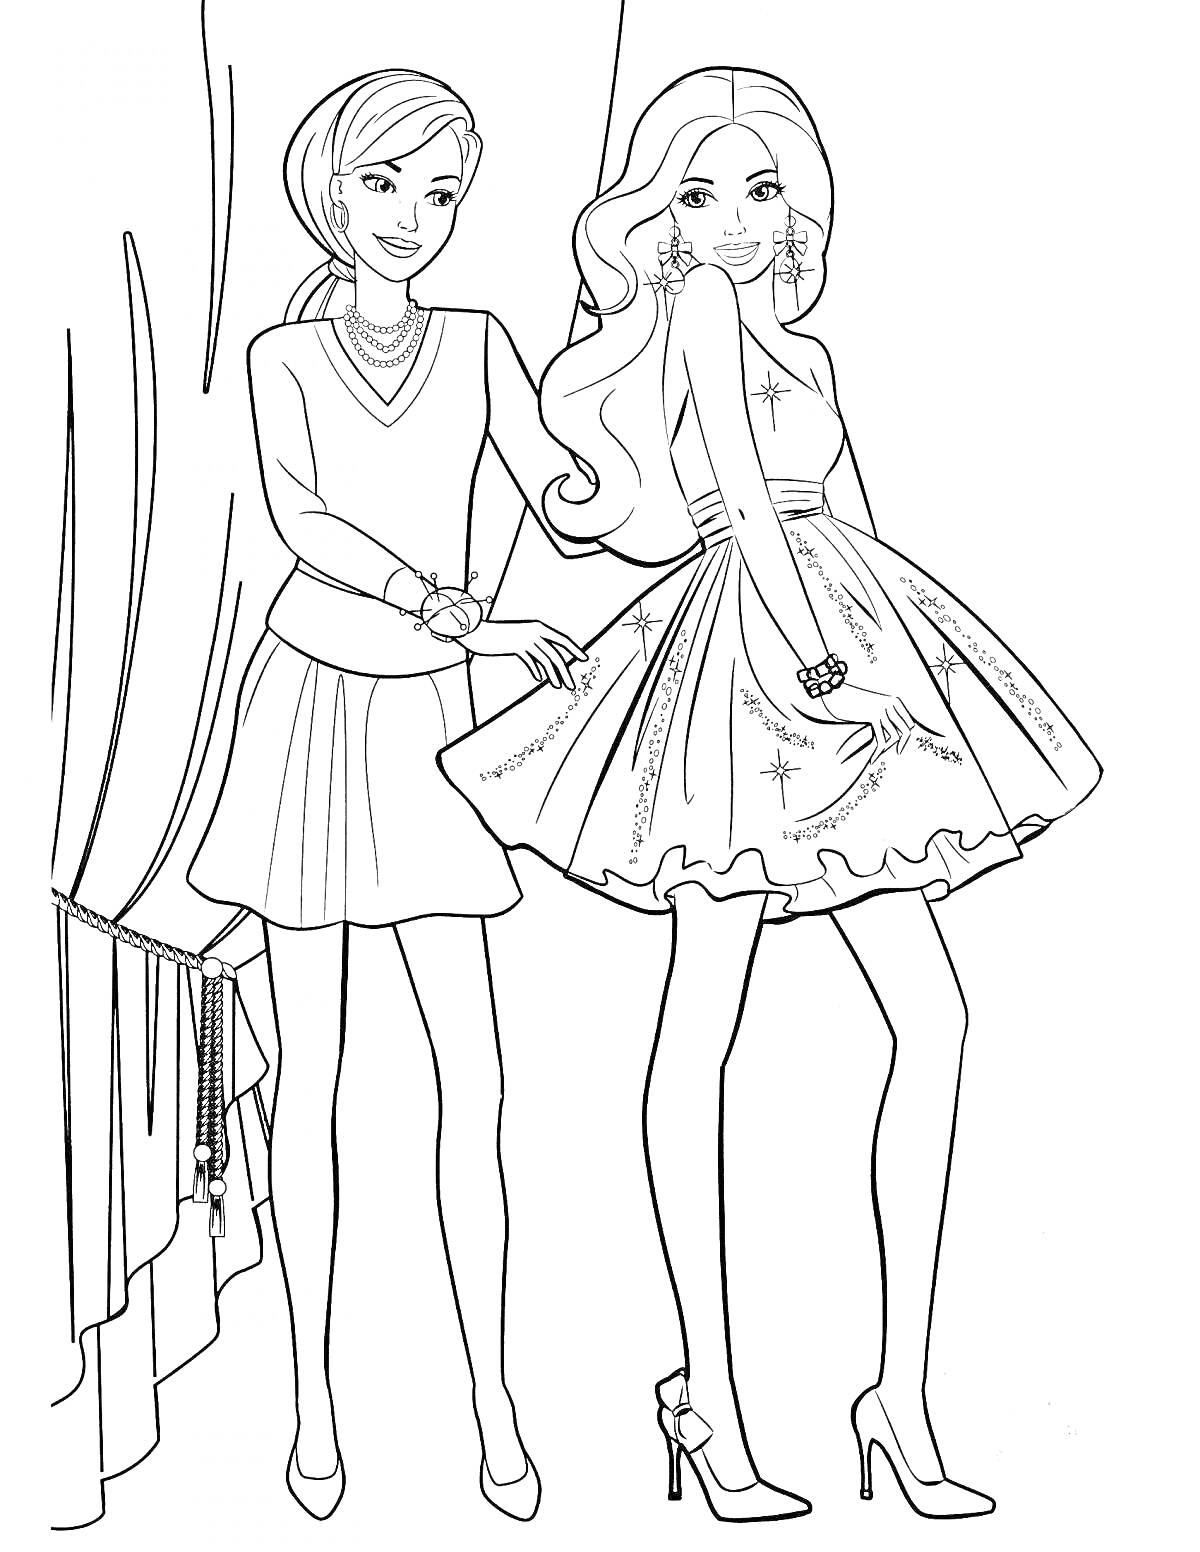 Раскраска Две куклы Барби в модных нарядах возле оконной шторы